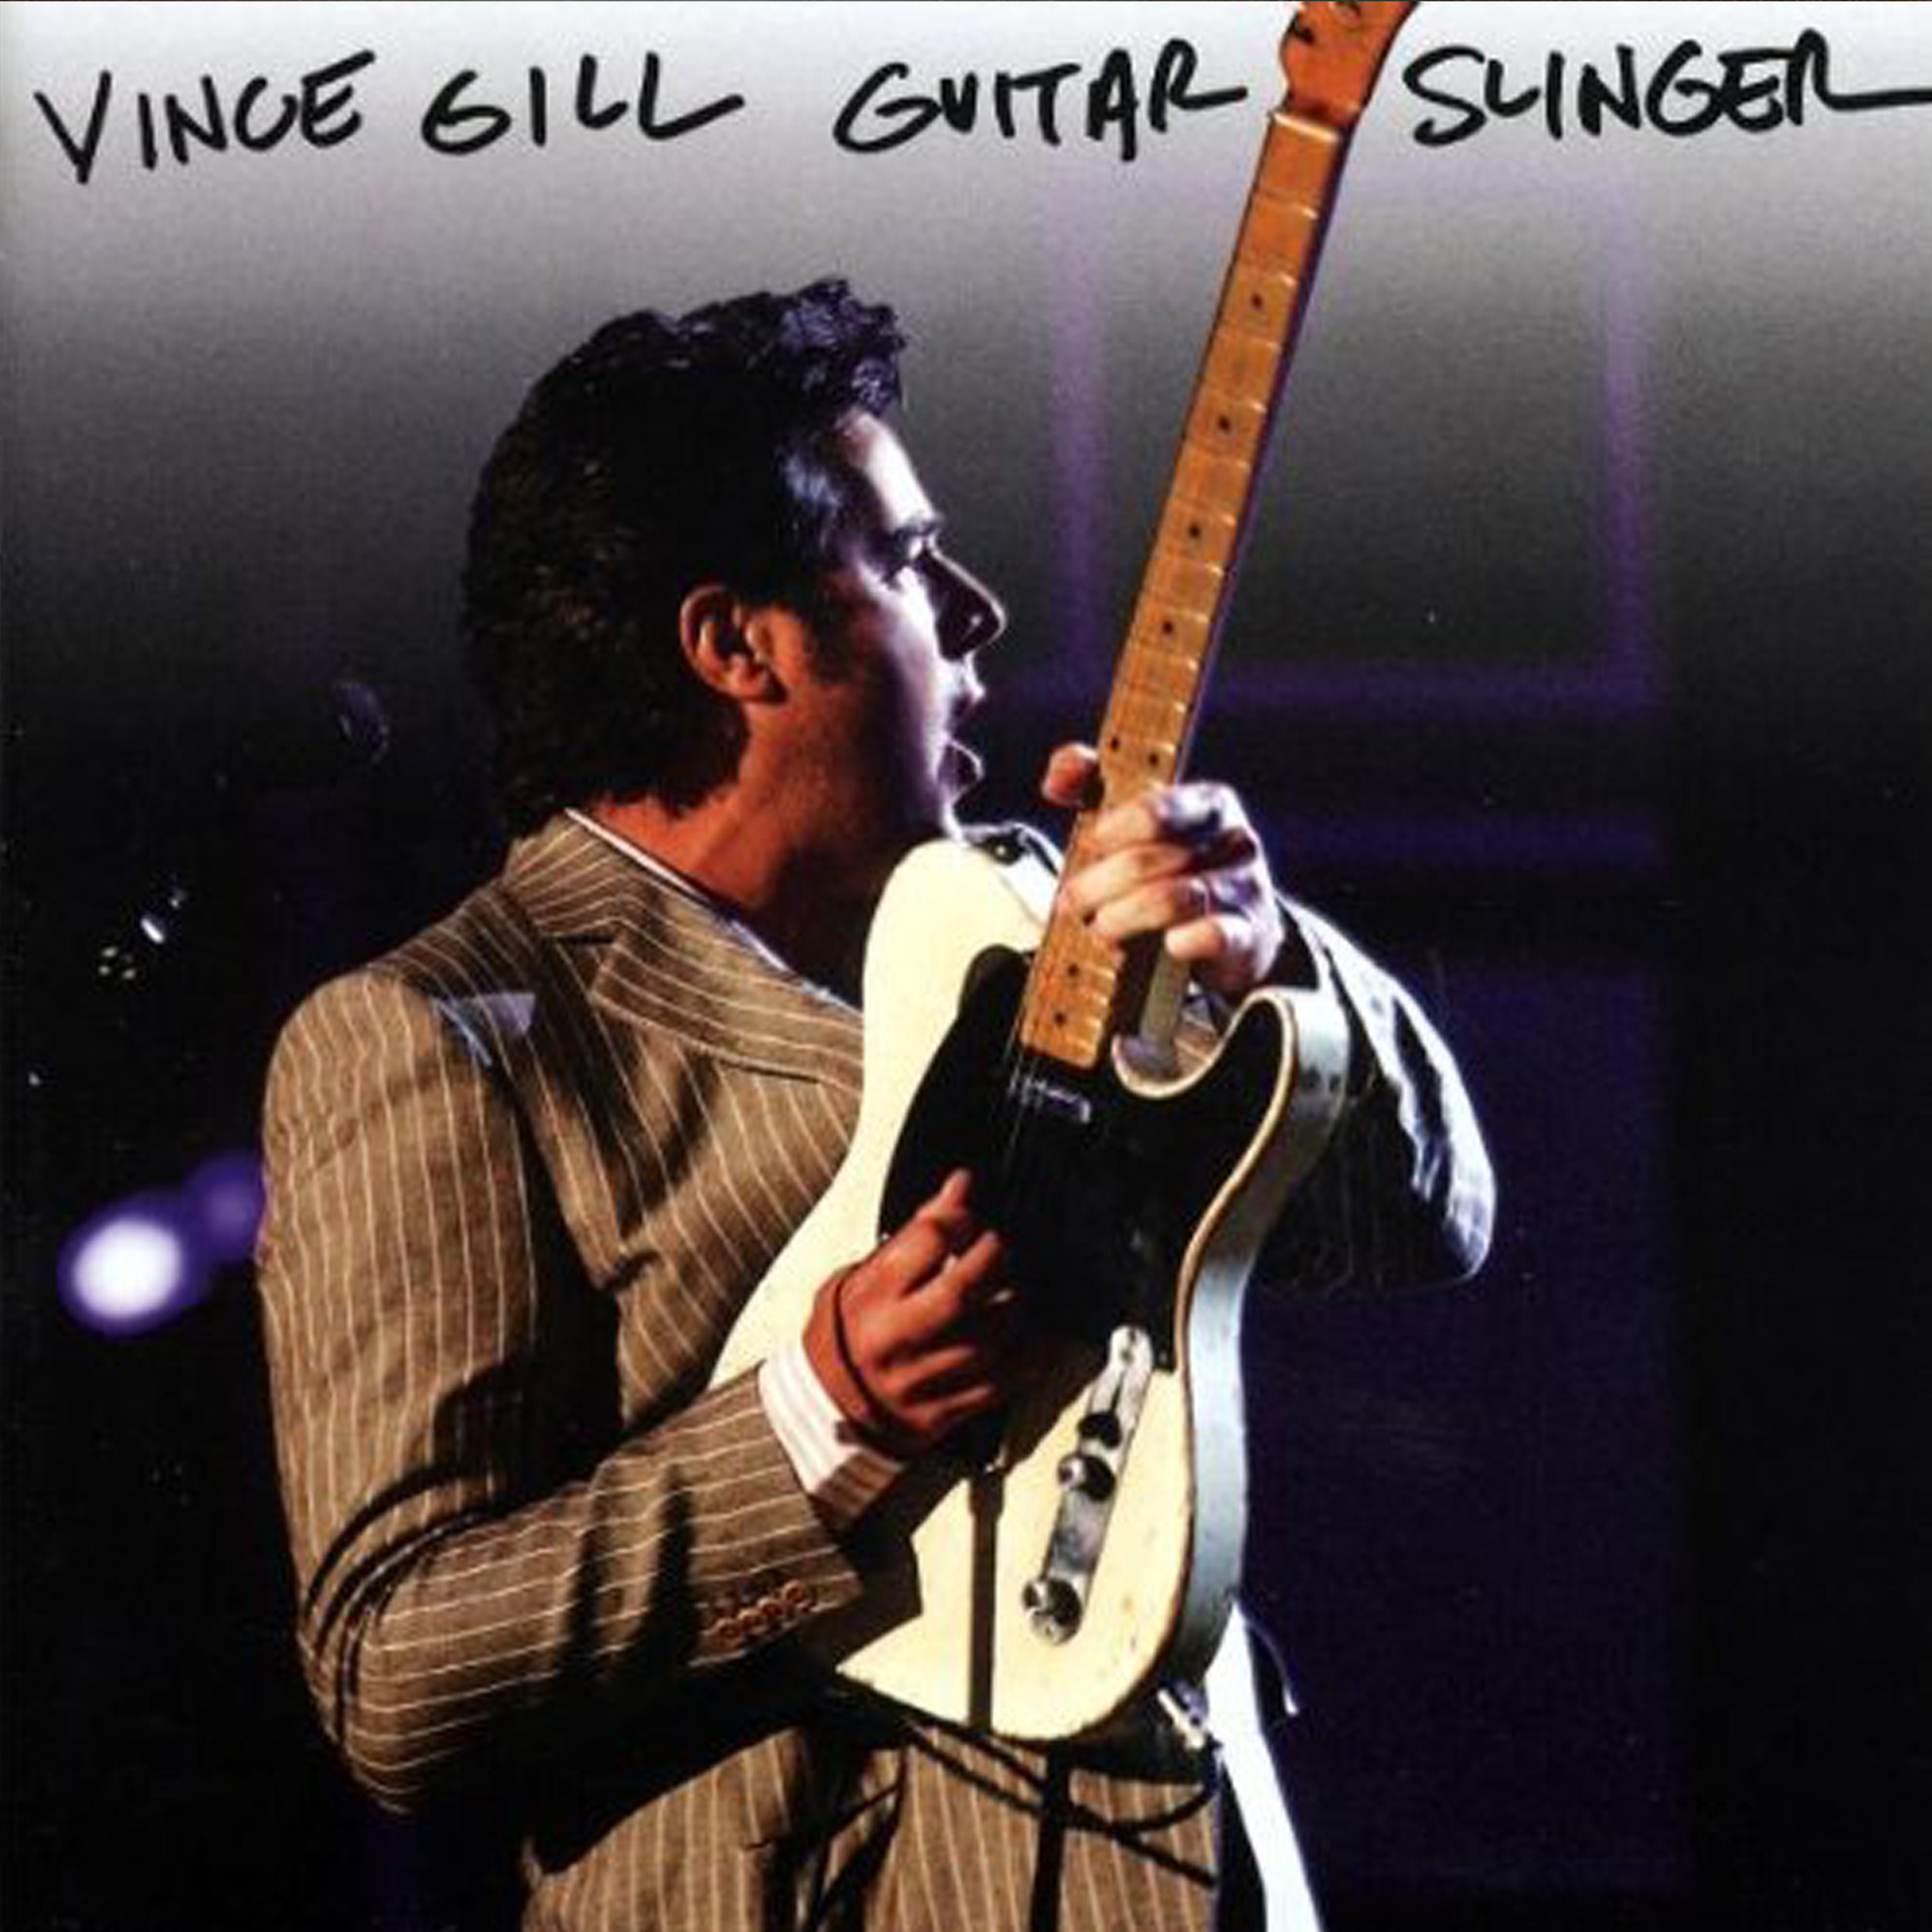 Vince Gill Guitar Slinger.jpg